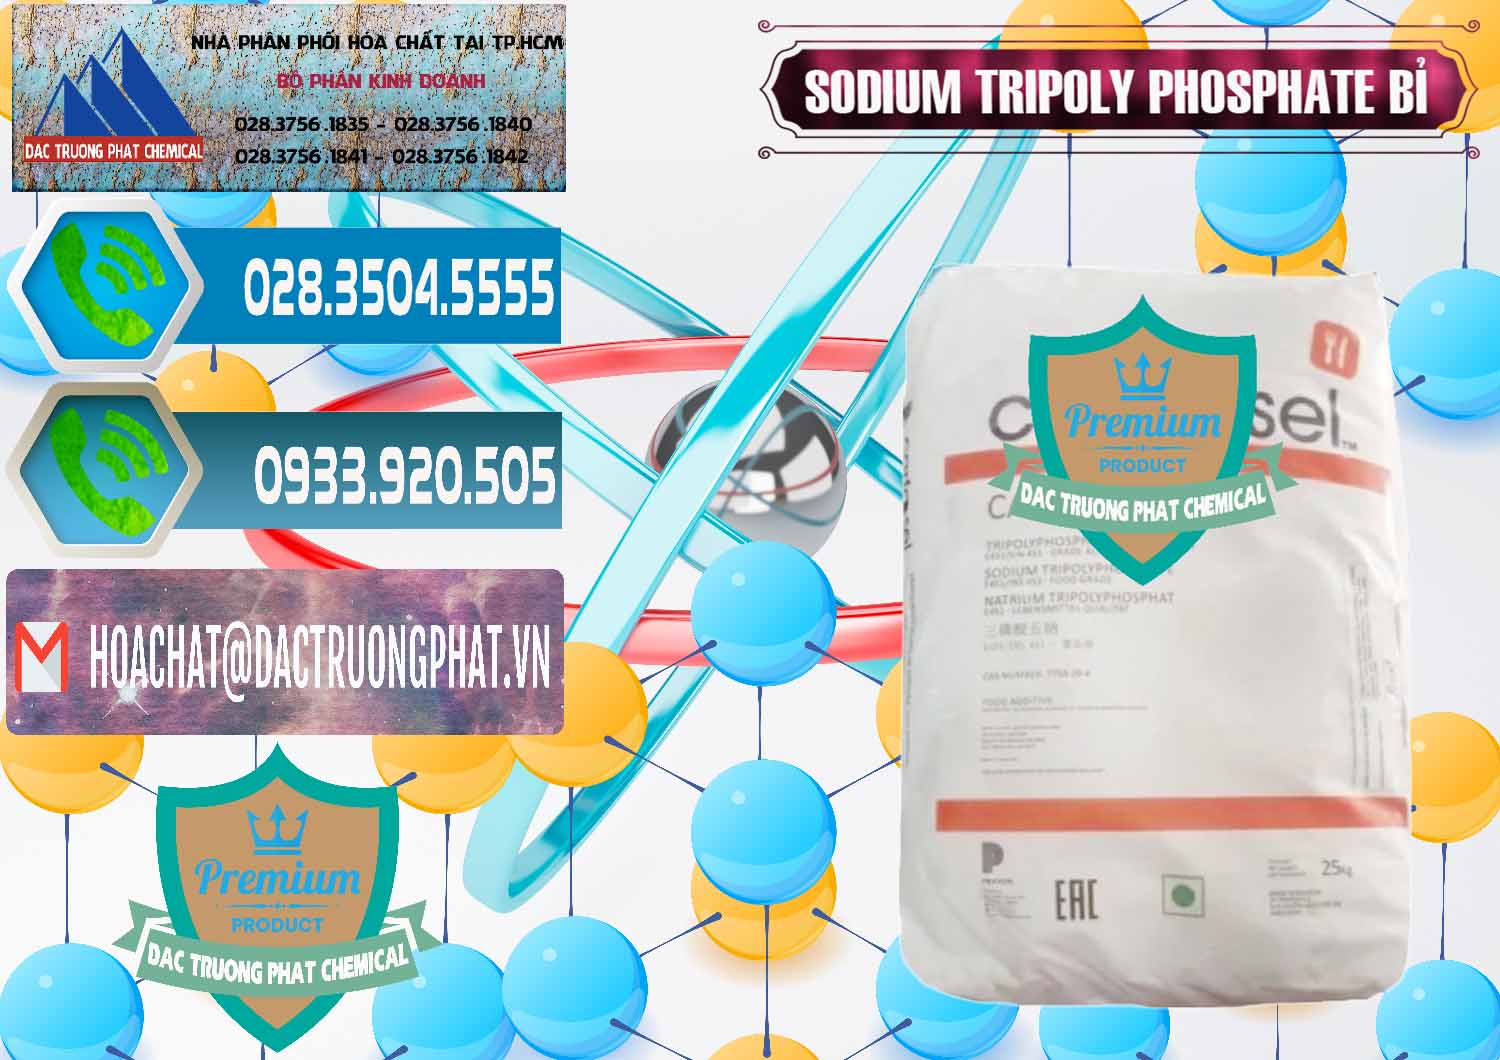 Chuyên bán & cung ứng Sodium Tripoly Phosphate - STPP Carfosel 991 Bỉ Belgium - 0429 - Cty chuyên cung cấp - bán hóa chất tại TP.HCM - congtyhoachat.net